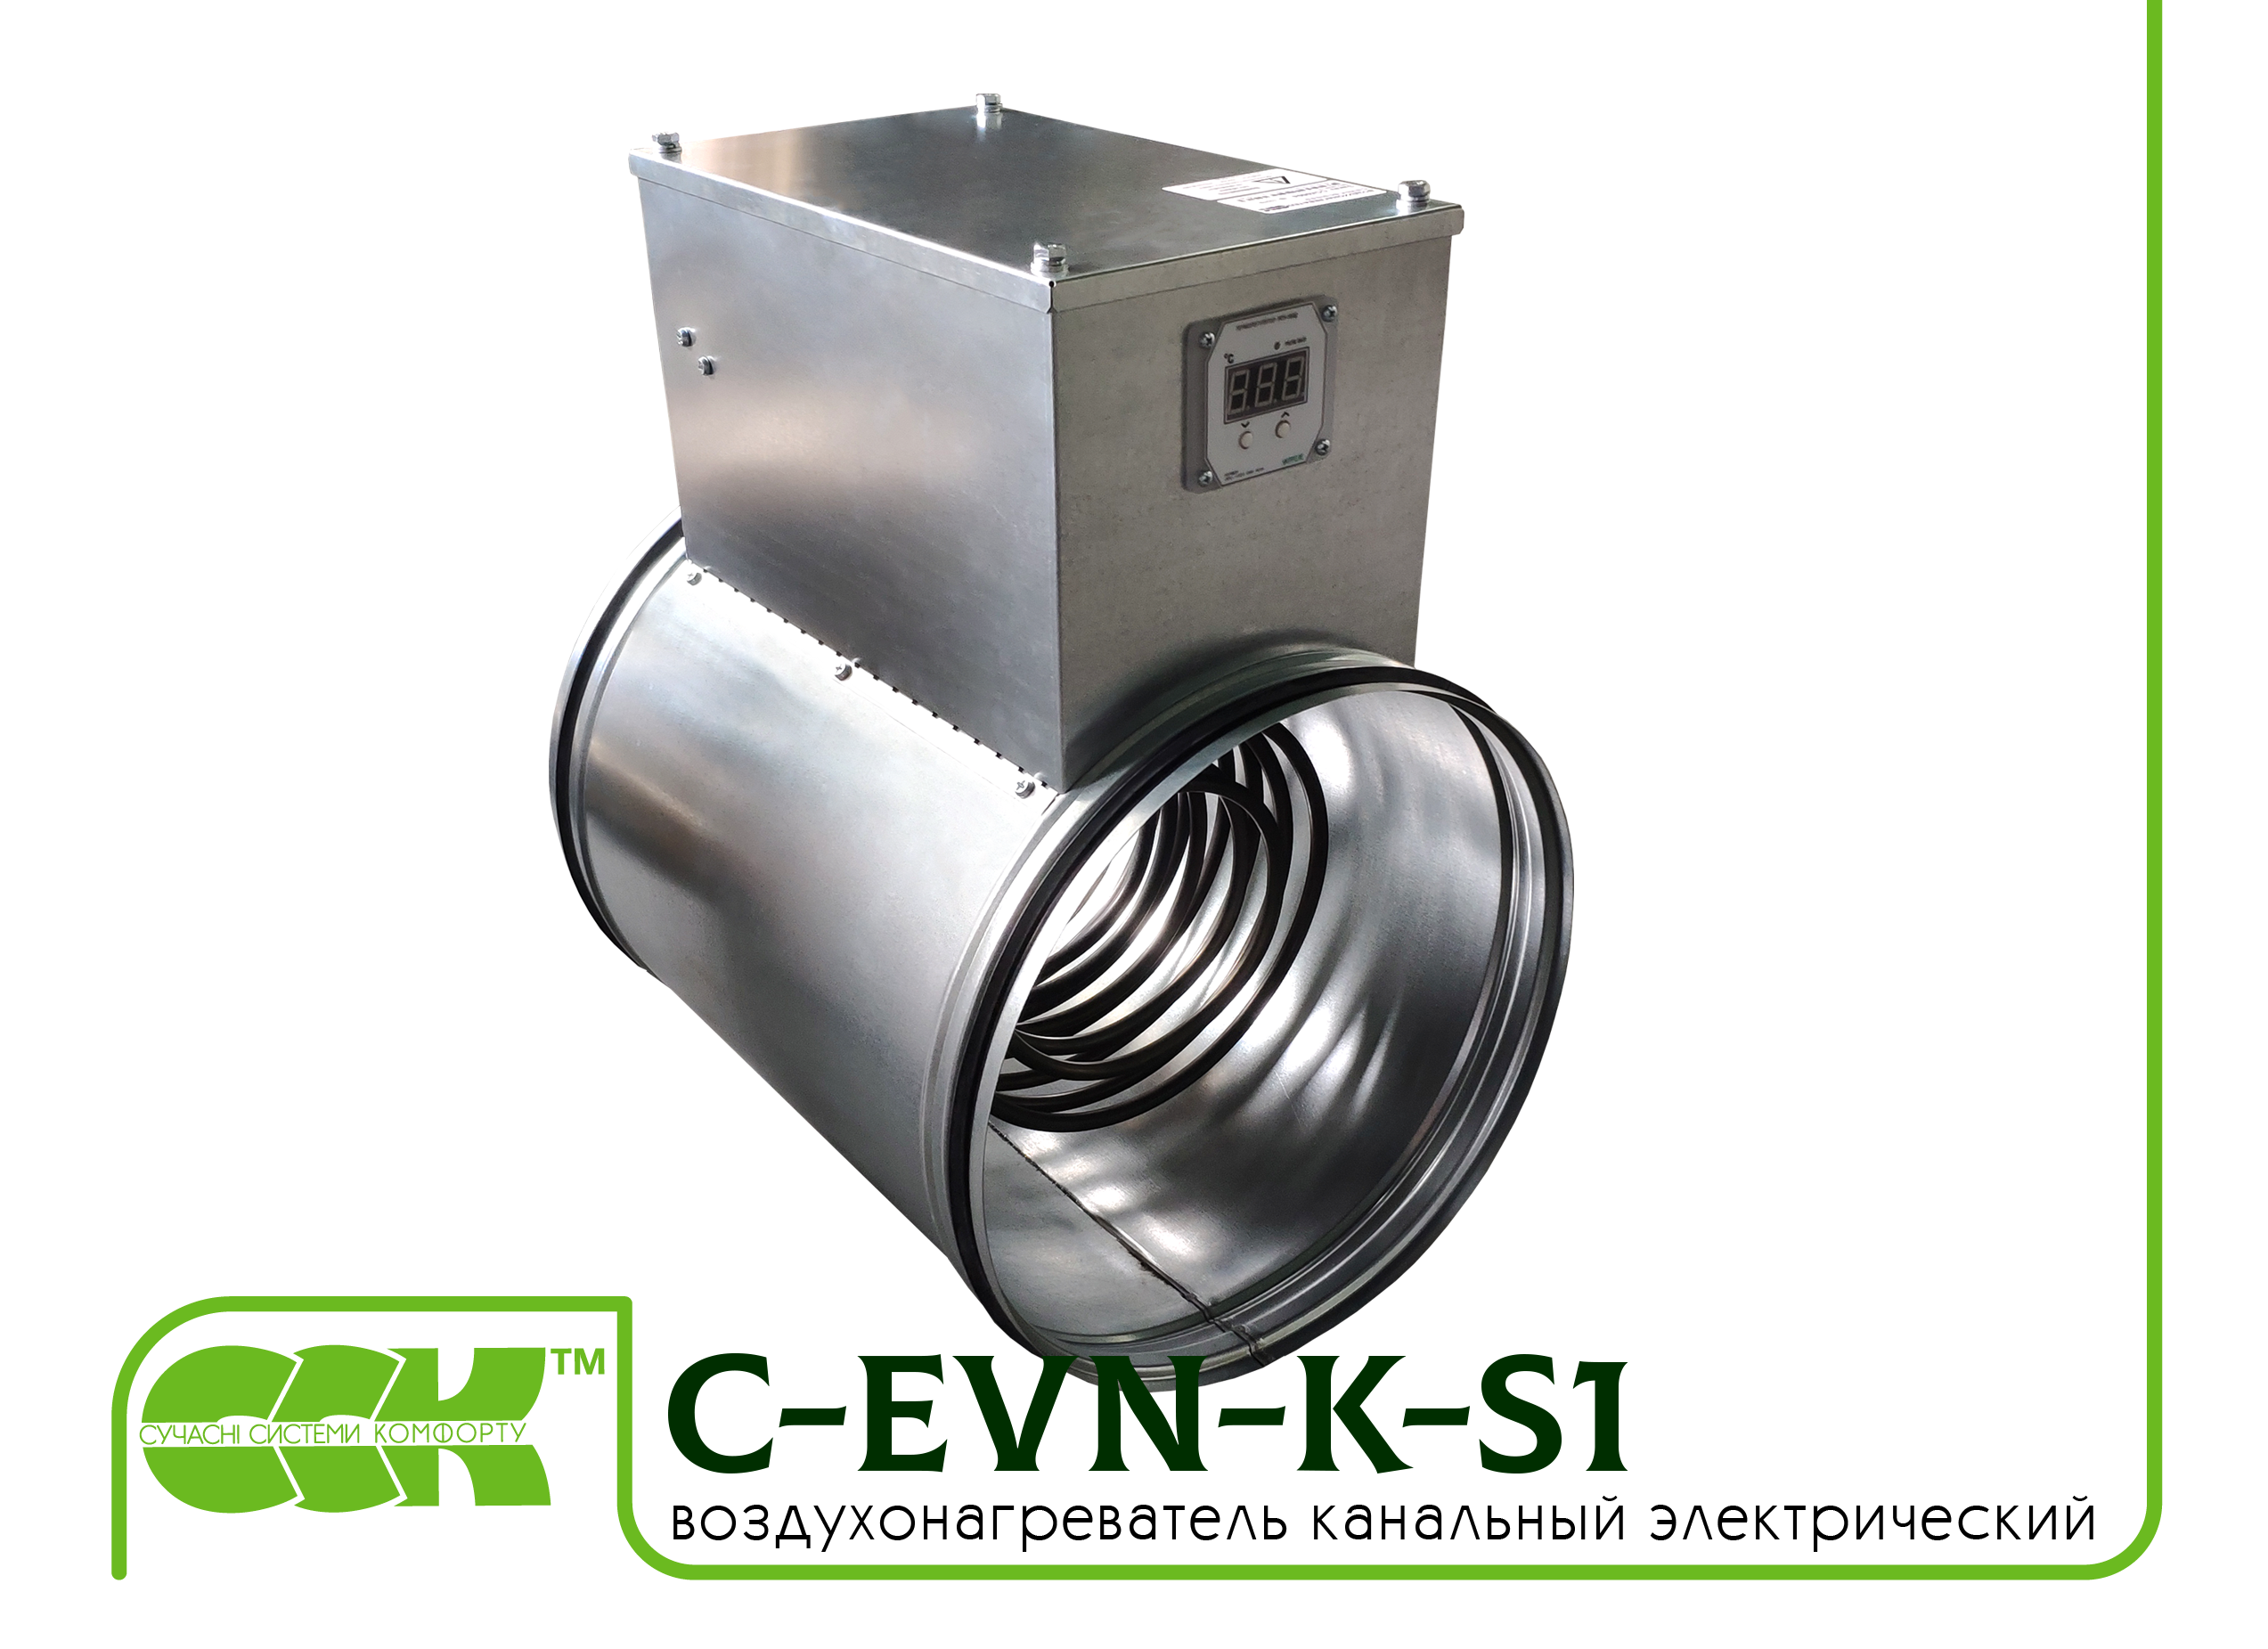 Воздухонагреватель канальный электрический для круглых каналов C-EVN-K-S1-160-3,0